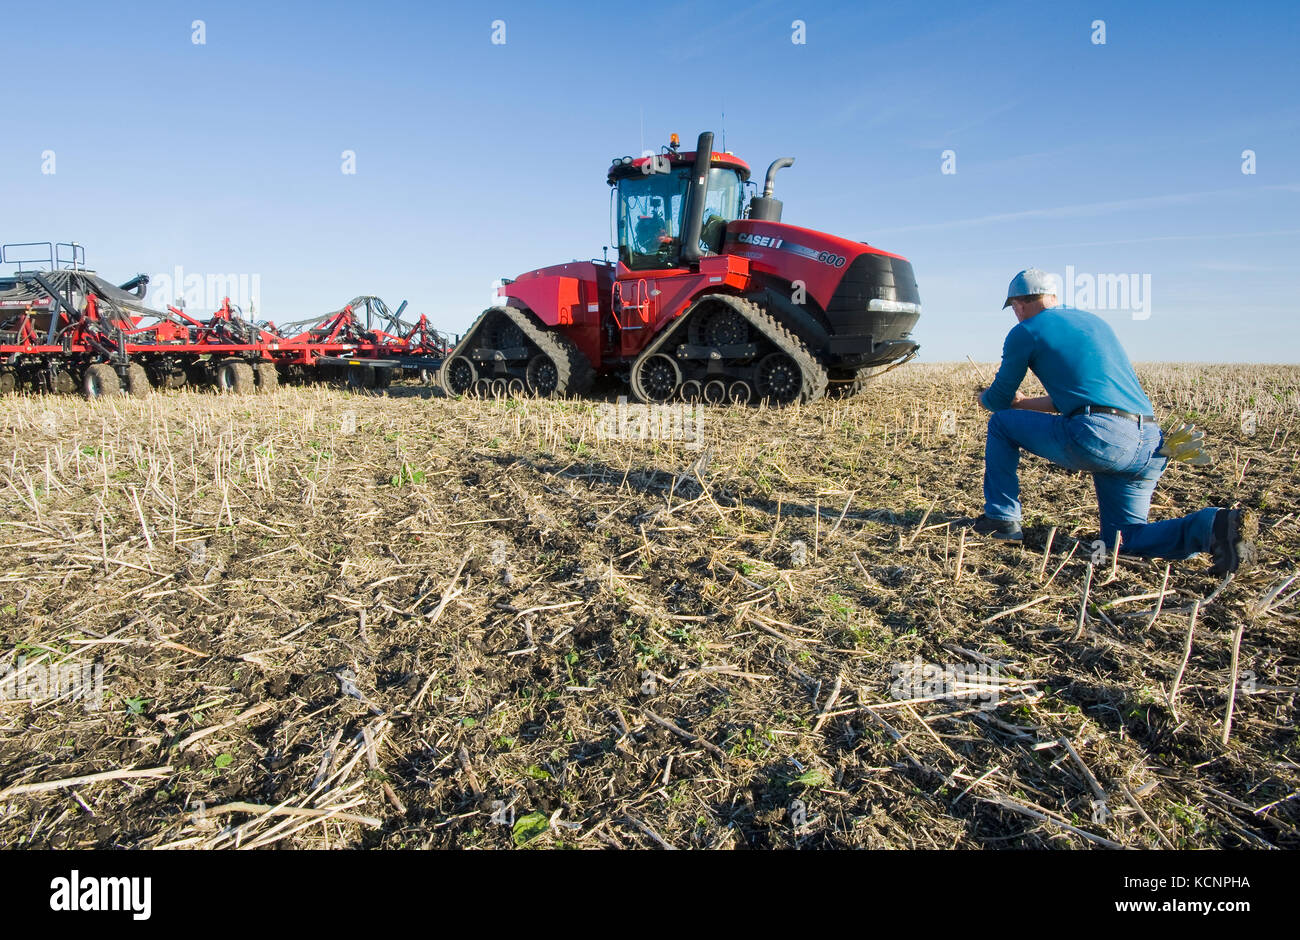 Agriculteur de champ avec un tracteur et le semoir pneumatique Quad-Trac les semis de blé d'hiver dans un champ jusqu'à zéro dans l'arrière-plan, près de Lorette, Manitoba, Canada Banque D'Images